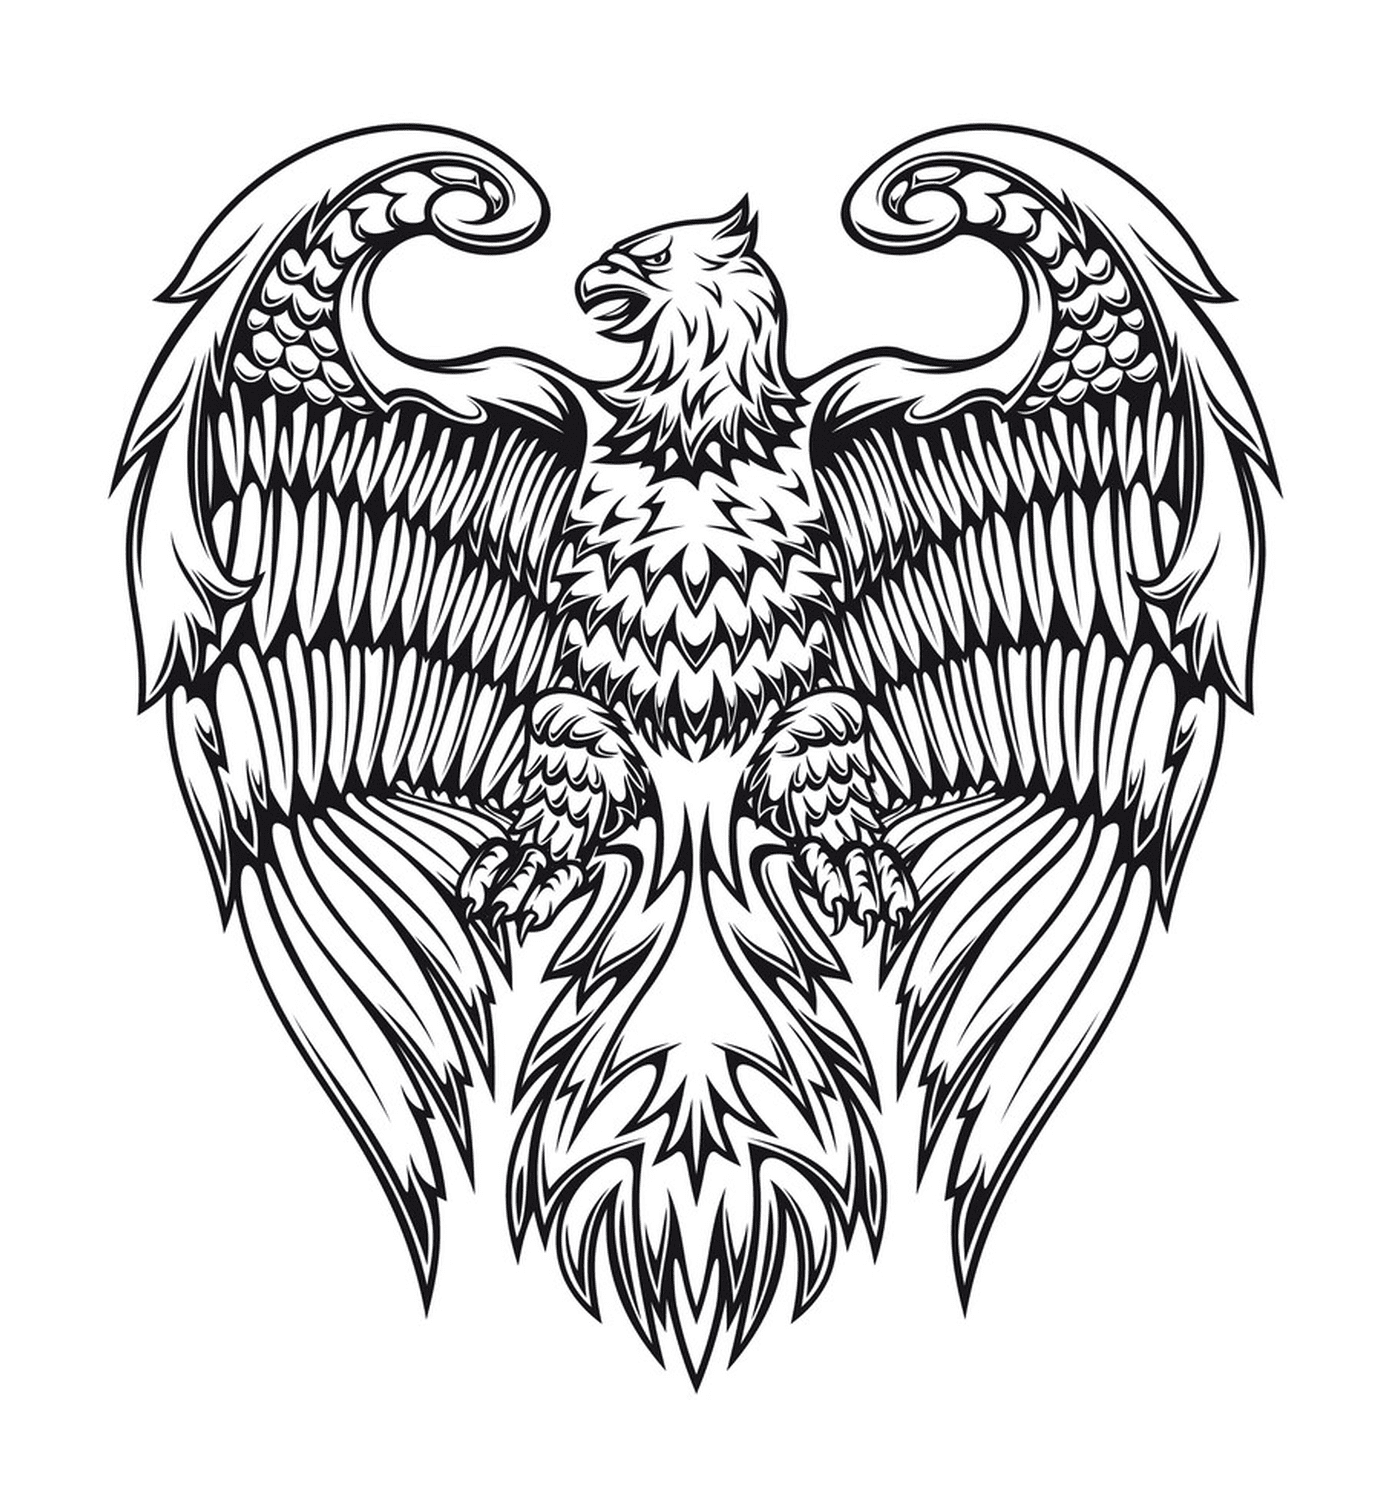  Águila real con varios patrones 